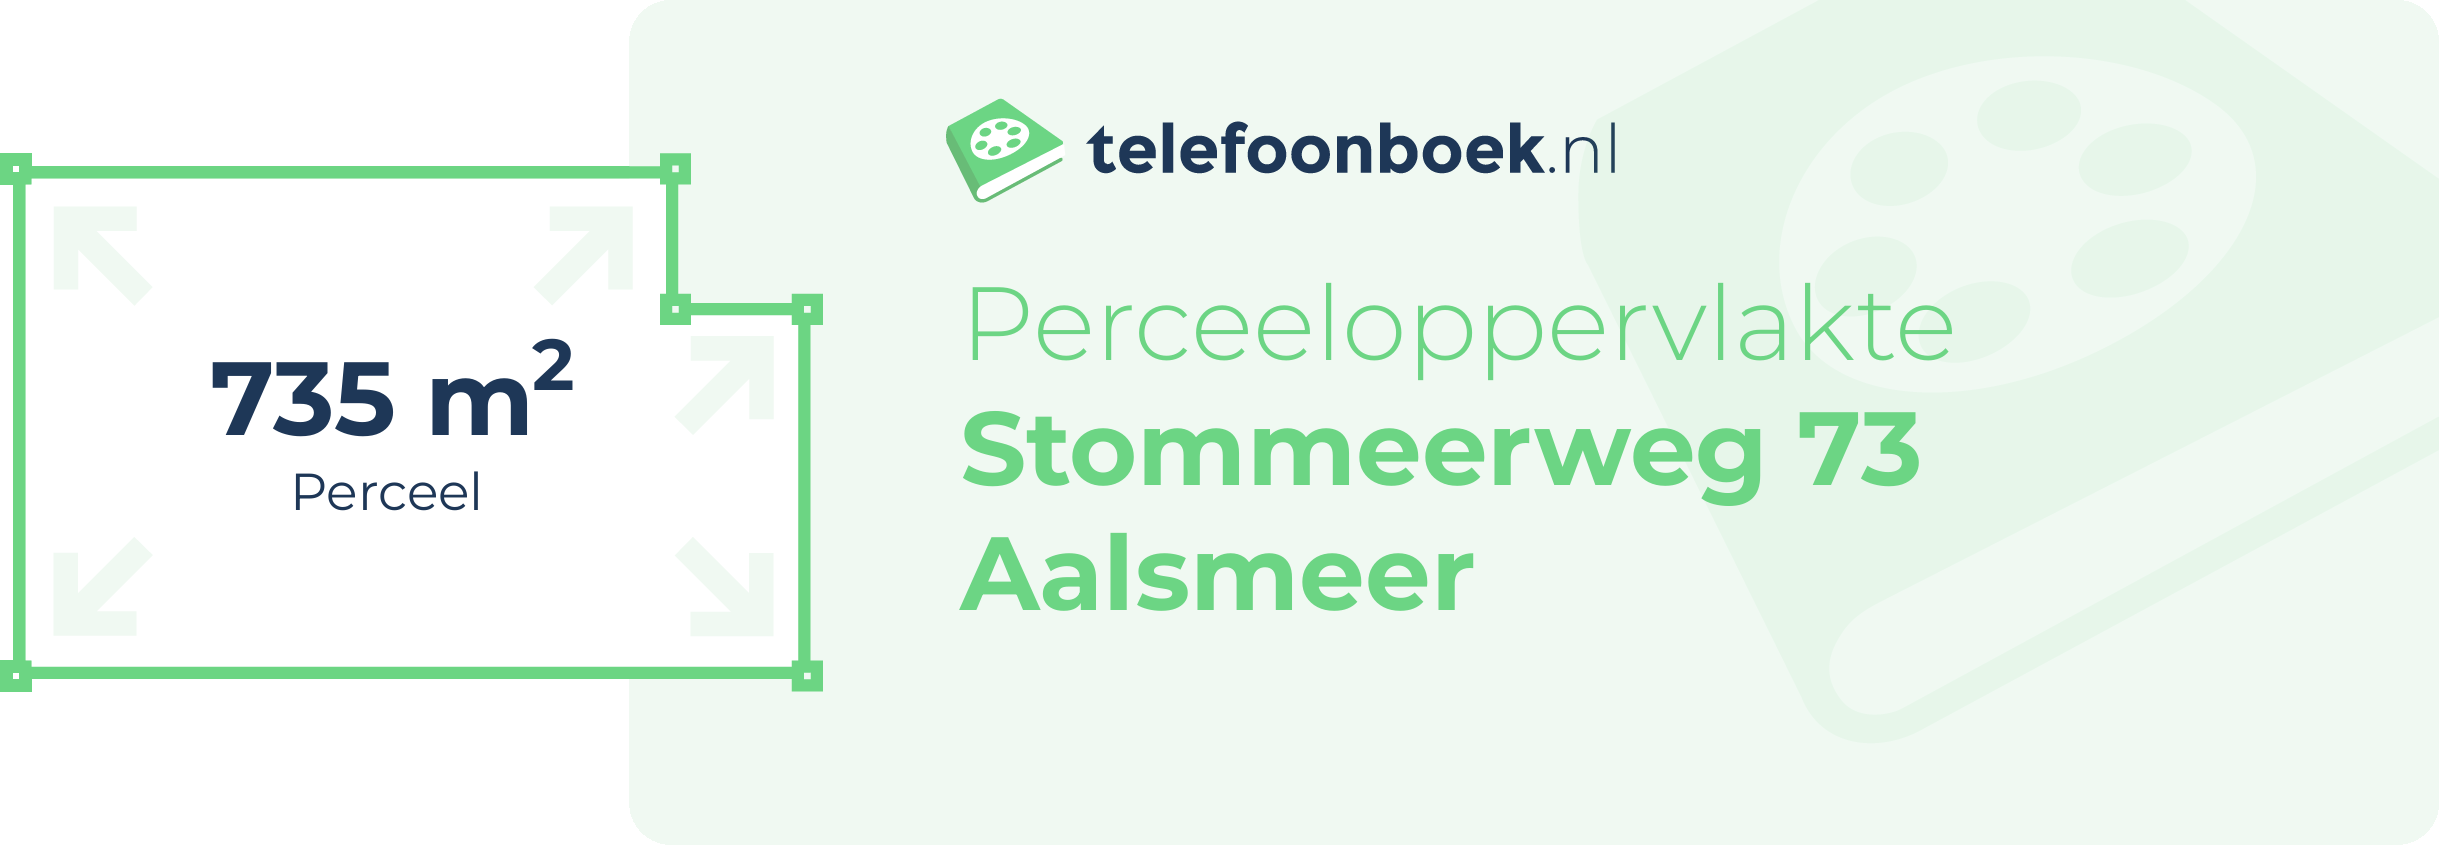 Perceeloppervlakte Stommeerweg 73 Aalsmeer